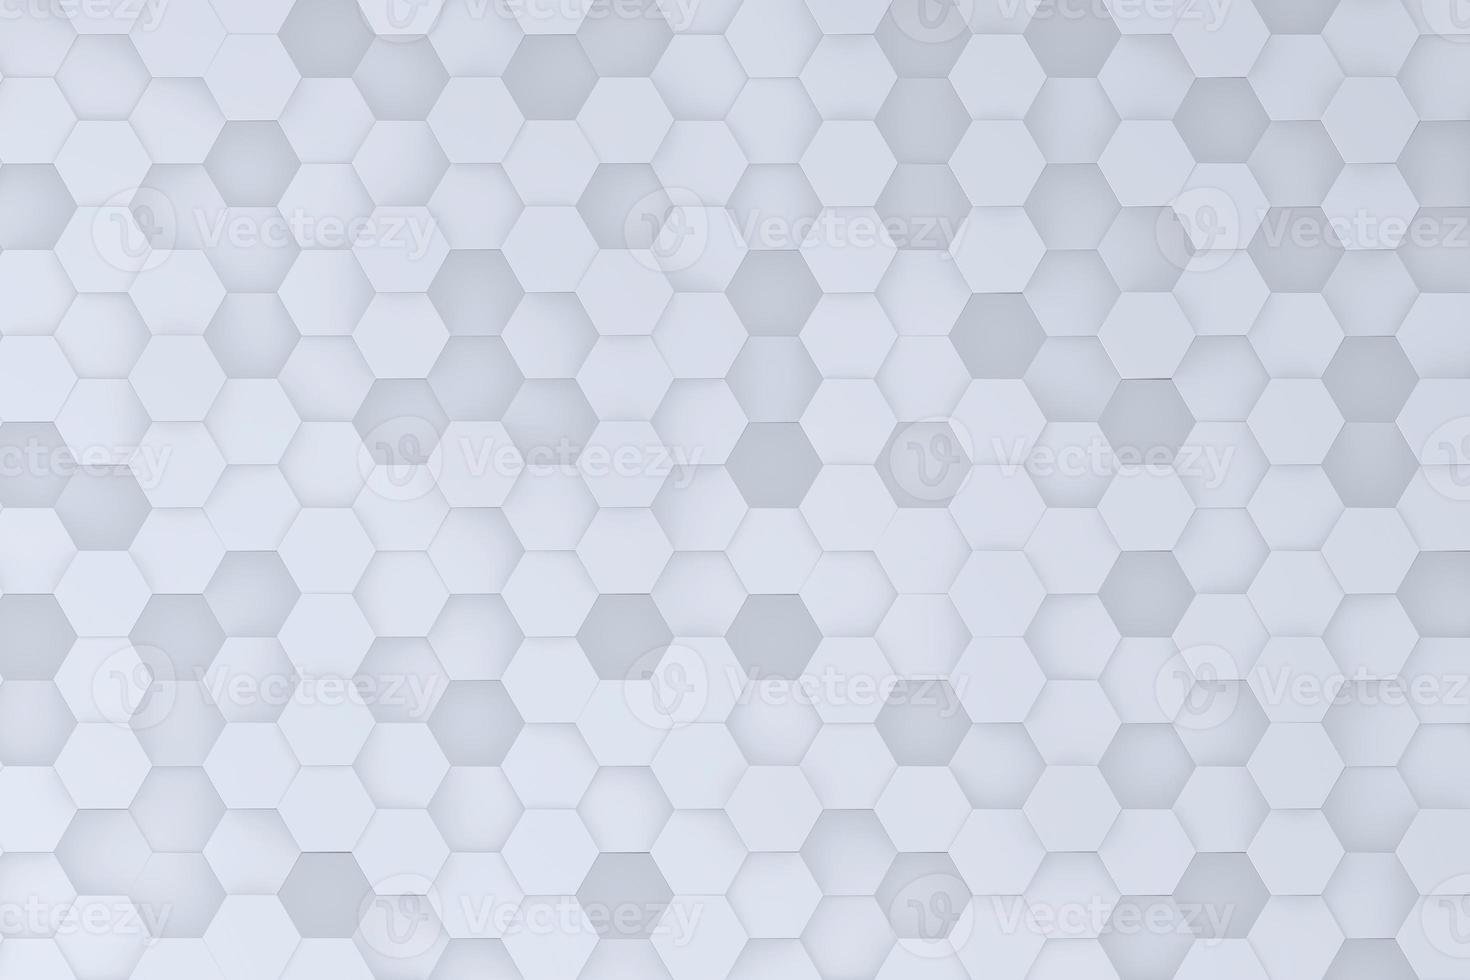 abstracto futurista vista superior panal mosaico fondo blanco. representación 3d de células hexagonales geométricas realistas foto